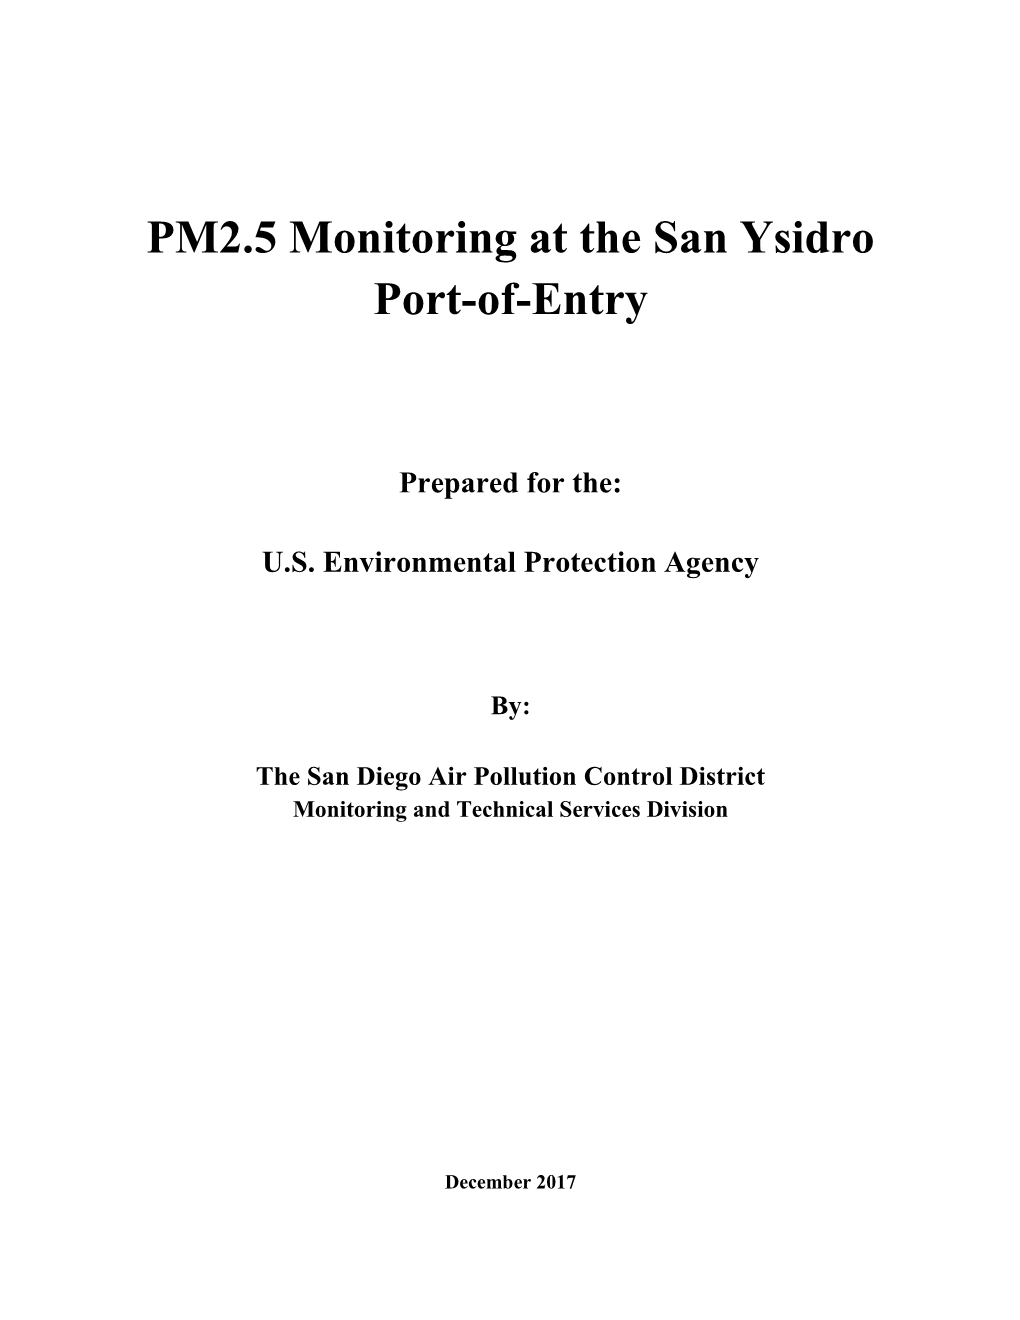 PM2.5 Monitoring at the San Ysidro Port-Of-Entry